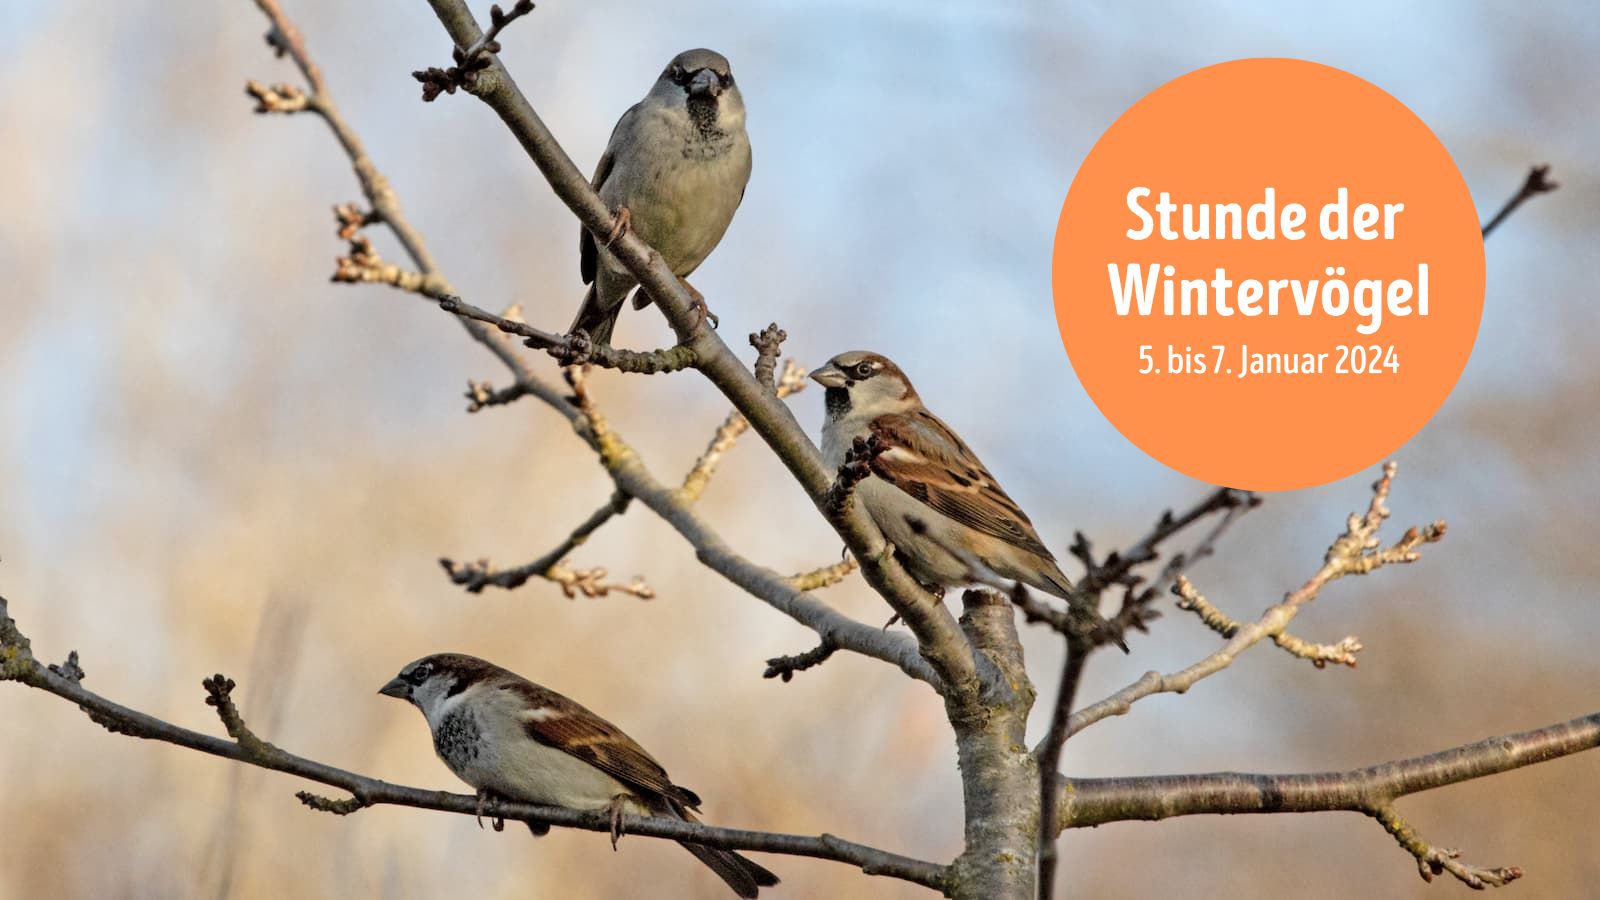 Information über die Stunde der Wintervögel 2024 und Foto von Haussperlingen auf kahlem Baum